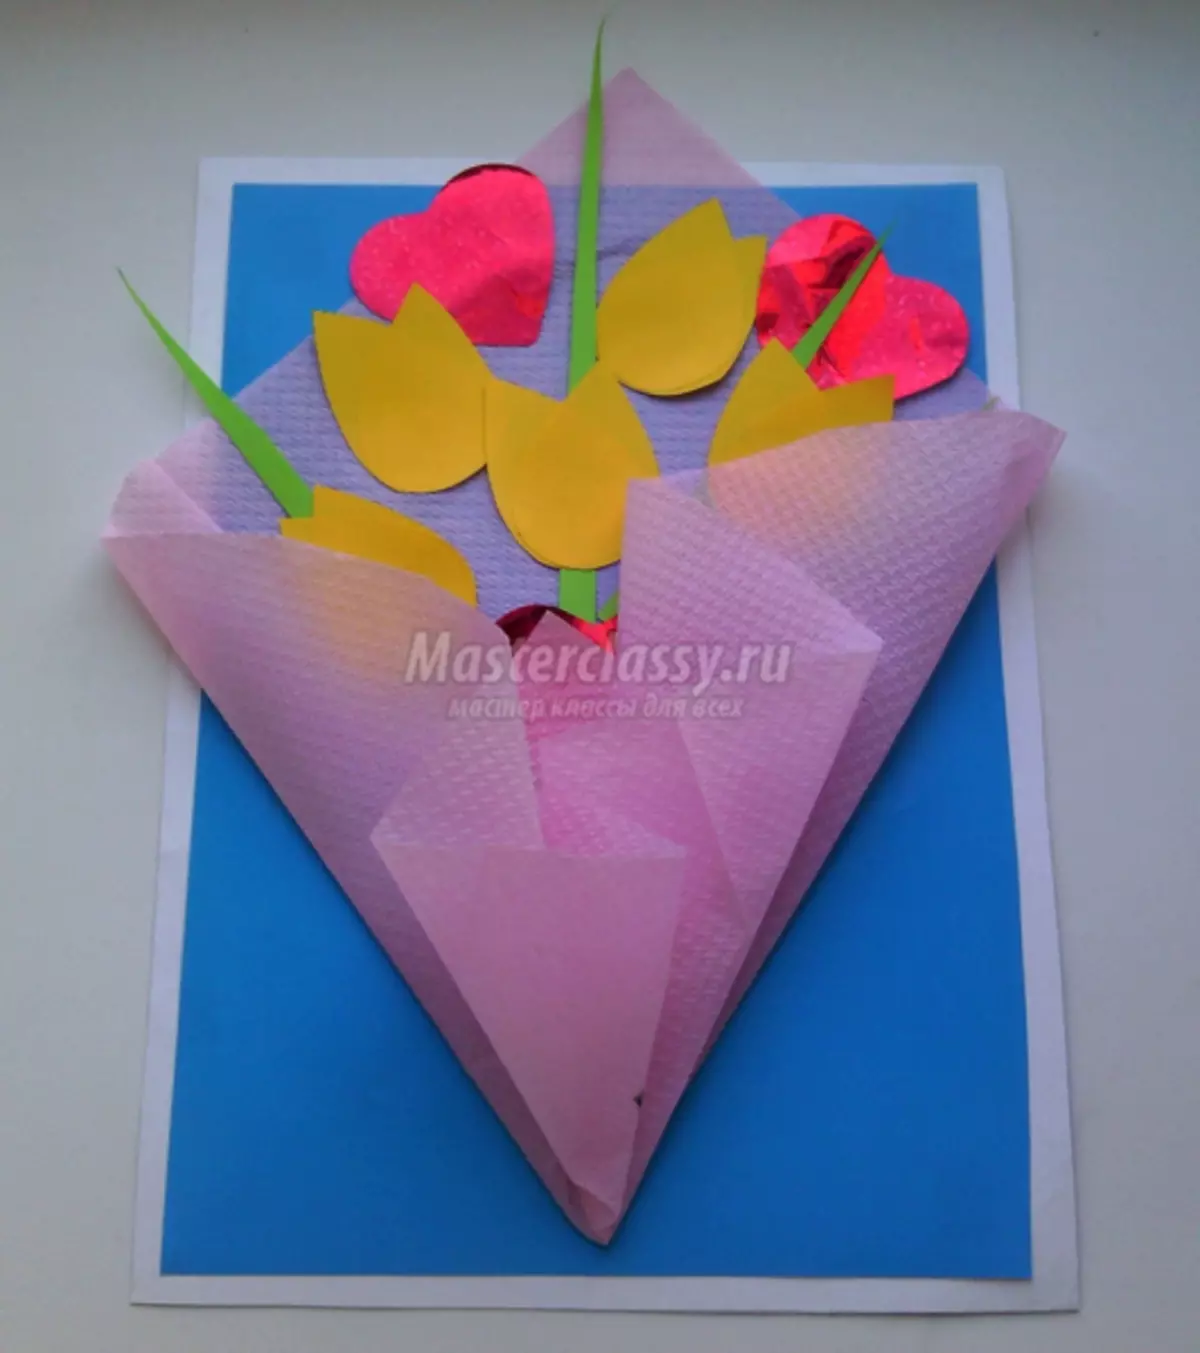 Sådan laver du et bulkpapirkort med blomster senest den 8. marts